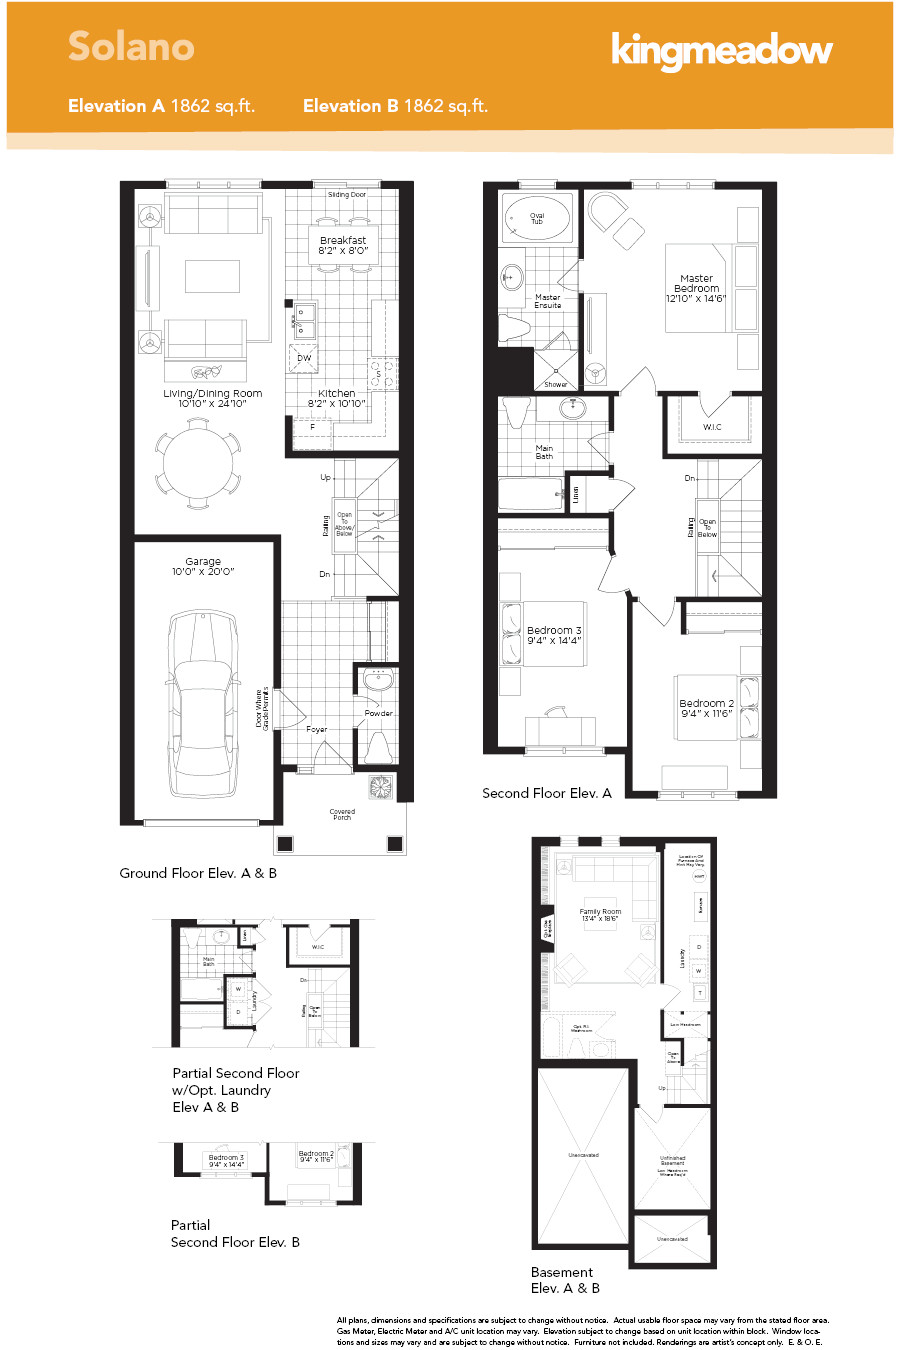 Minto Homes Floor Plans Kingmeadow solano Model Oshawa New Homes Minto